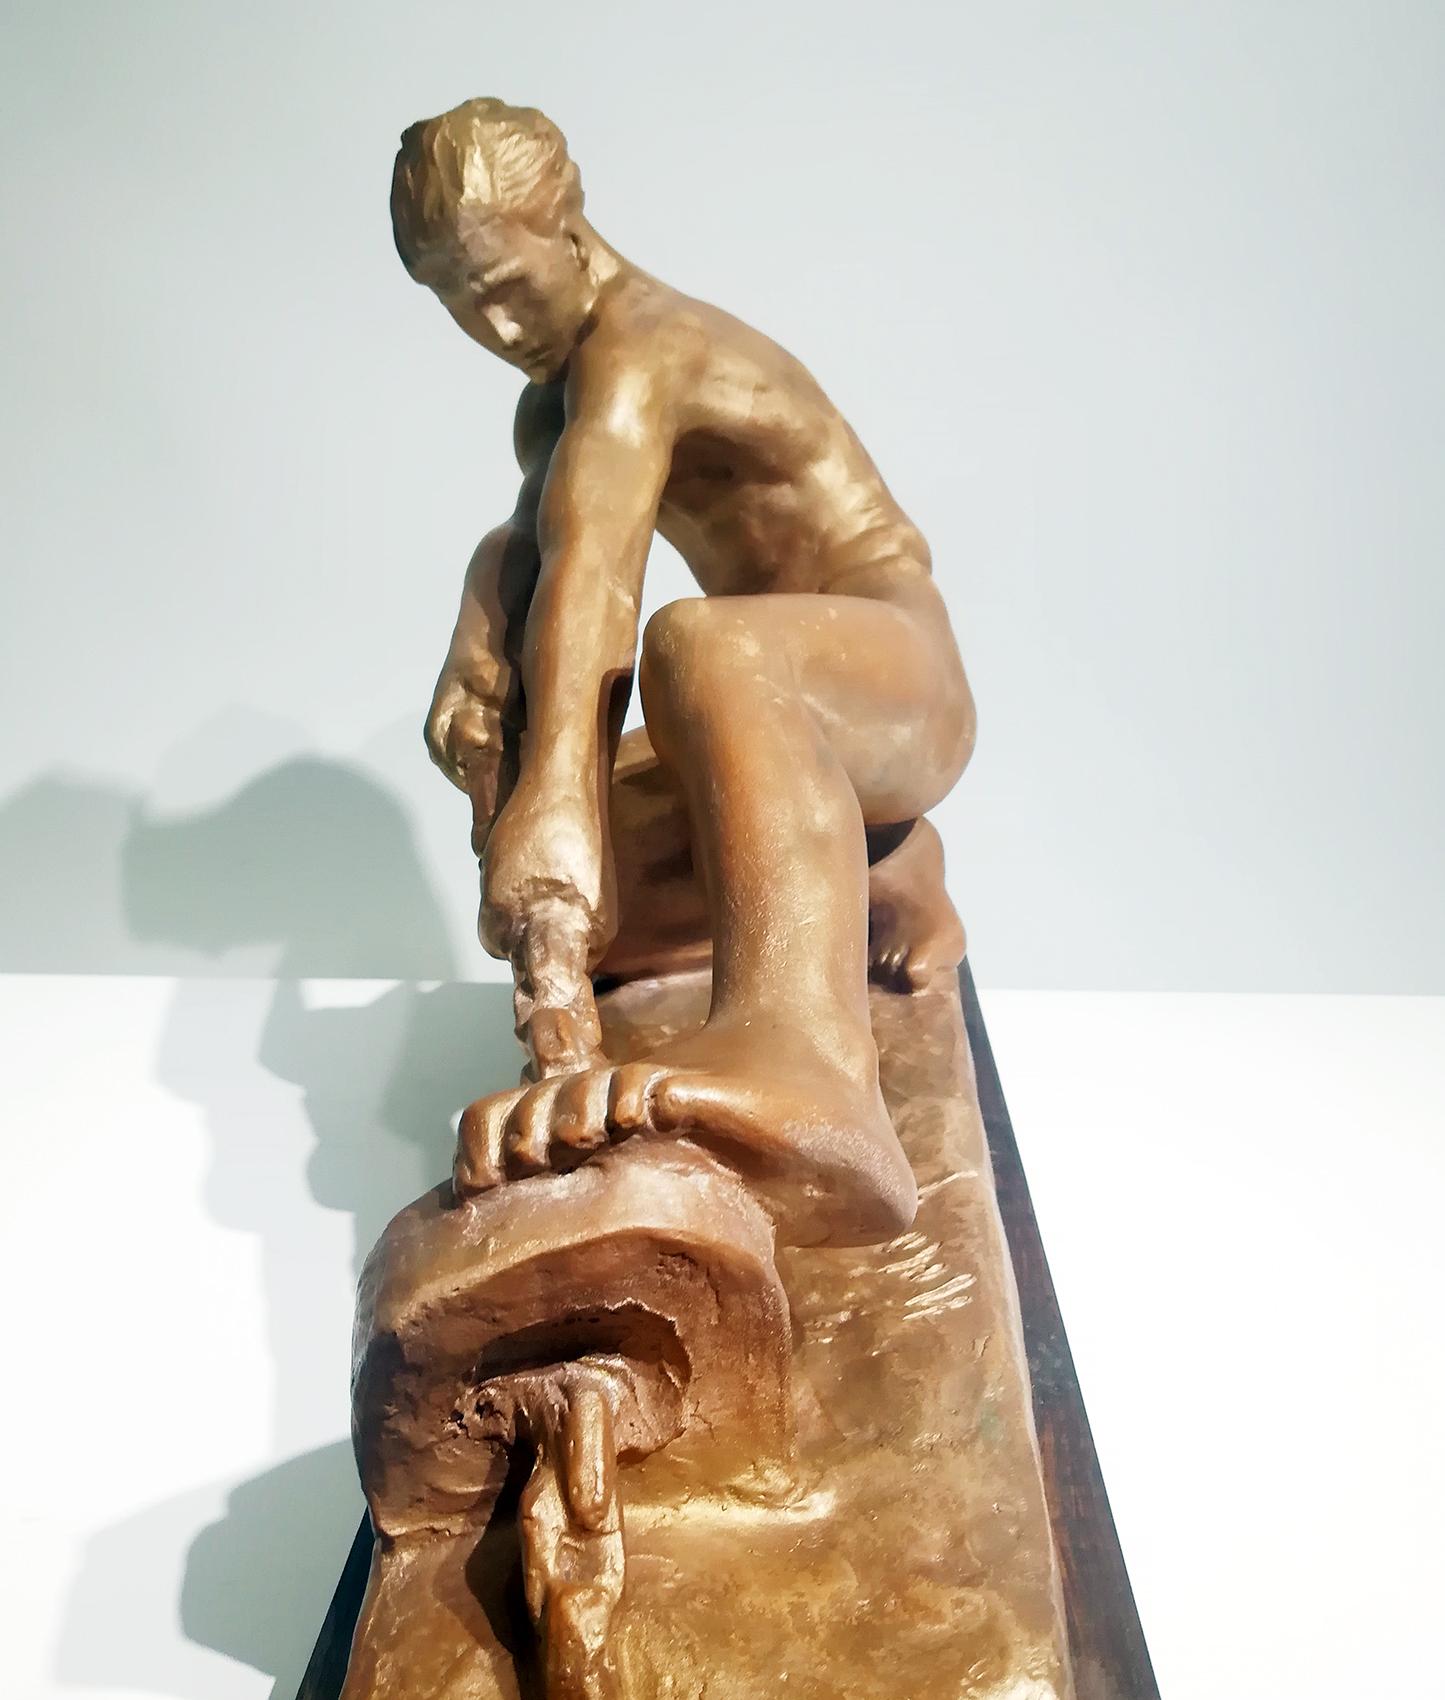 Sculpture Art déco en terre cuite représentant un jeune homme athlétique tirant une corde, signée par l'artiste français Alexandre Kelety.
Monté sur une base en bois.
Dimensions de la base en bois : H 3 cm x L 46 cm x P 14,5 cm.
Dimensions de